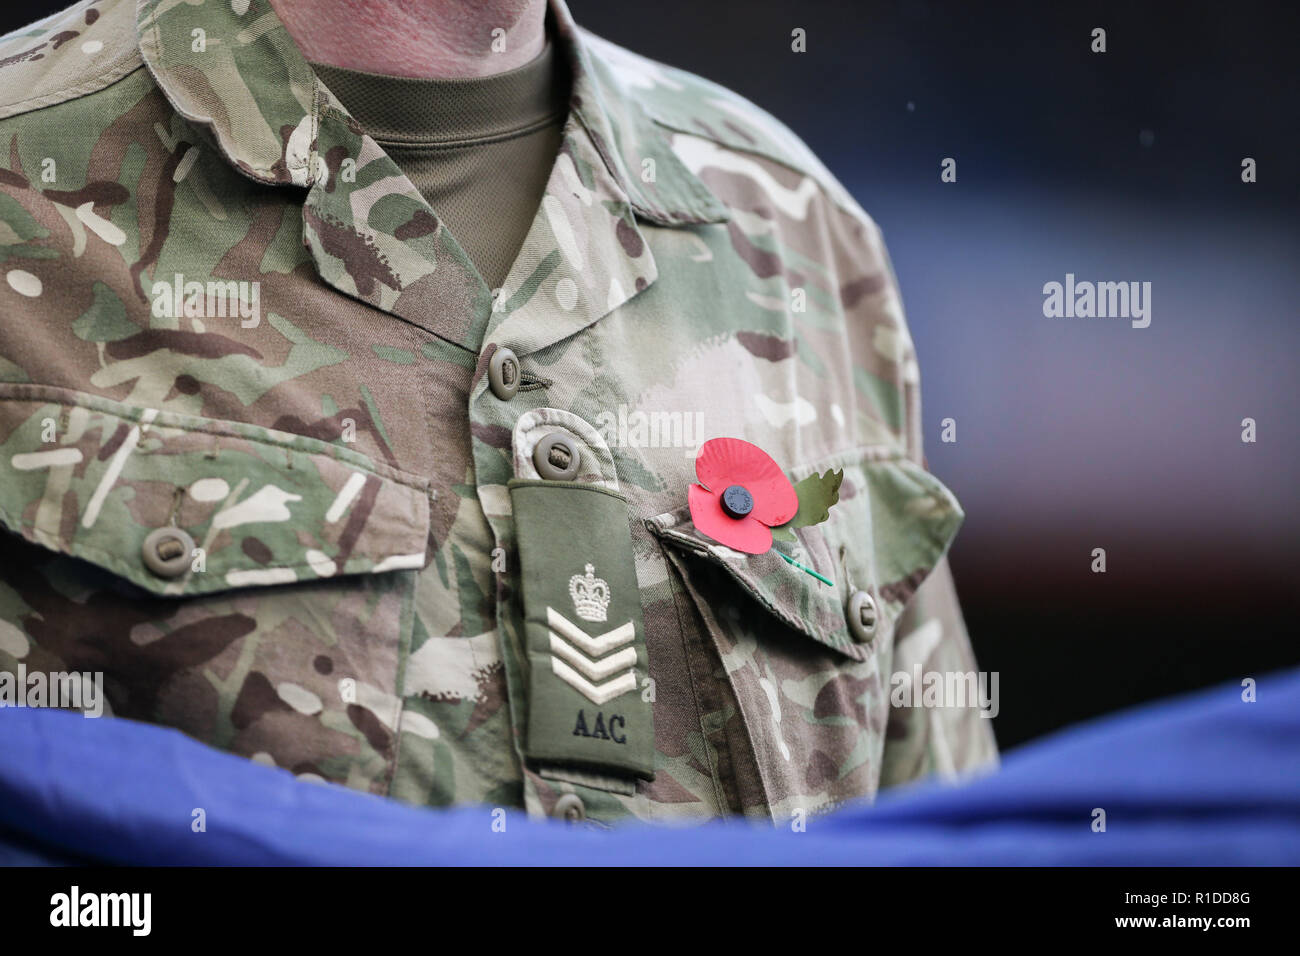 Un membre des forces armées portant un coquelicot au cours de la Premier League match entre Chelsea et Arsenal à Stamford Bridge sur 11 Novembre 2018 à Londres, en Angleterre. (Photo par Arron Gent/phcimages.com) Banque D'Images